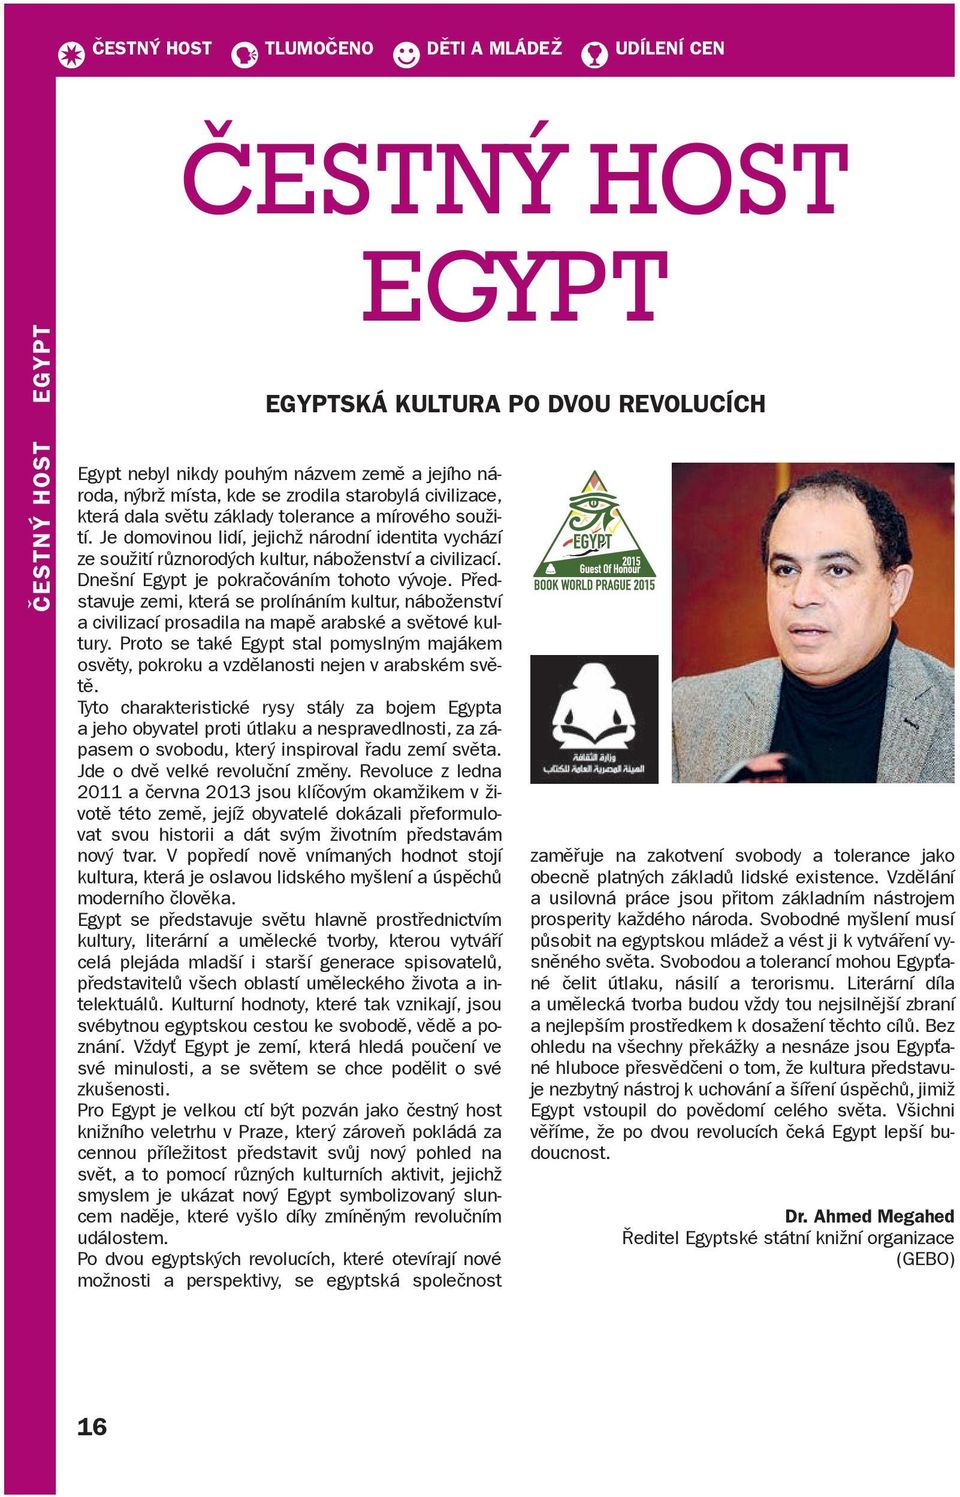 Dnešní Egypt je pokračováním tohoto vývoje. Představuje zemi, která se prolínáním kultur, náboženství a civilizací prosadila na mapě arabské a světové kultury.